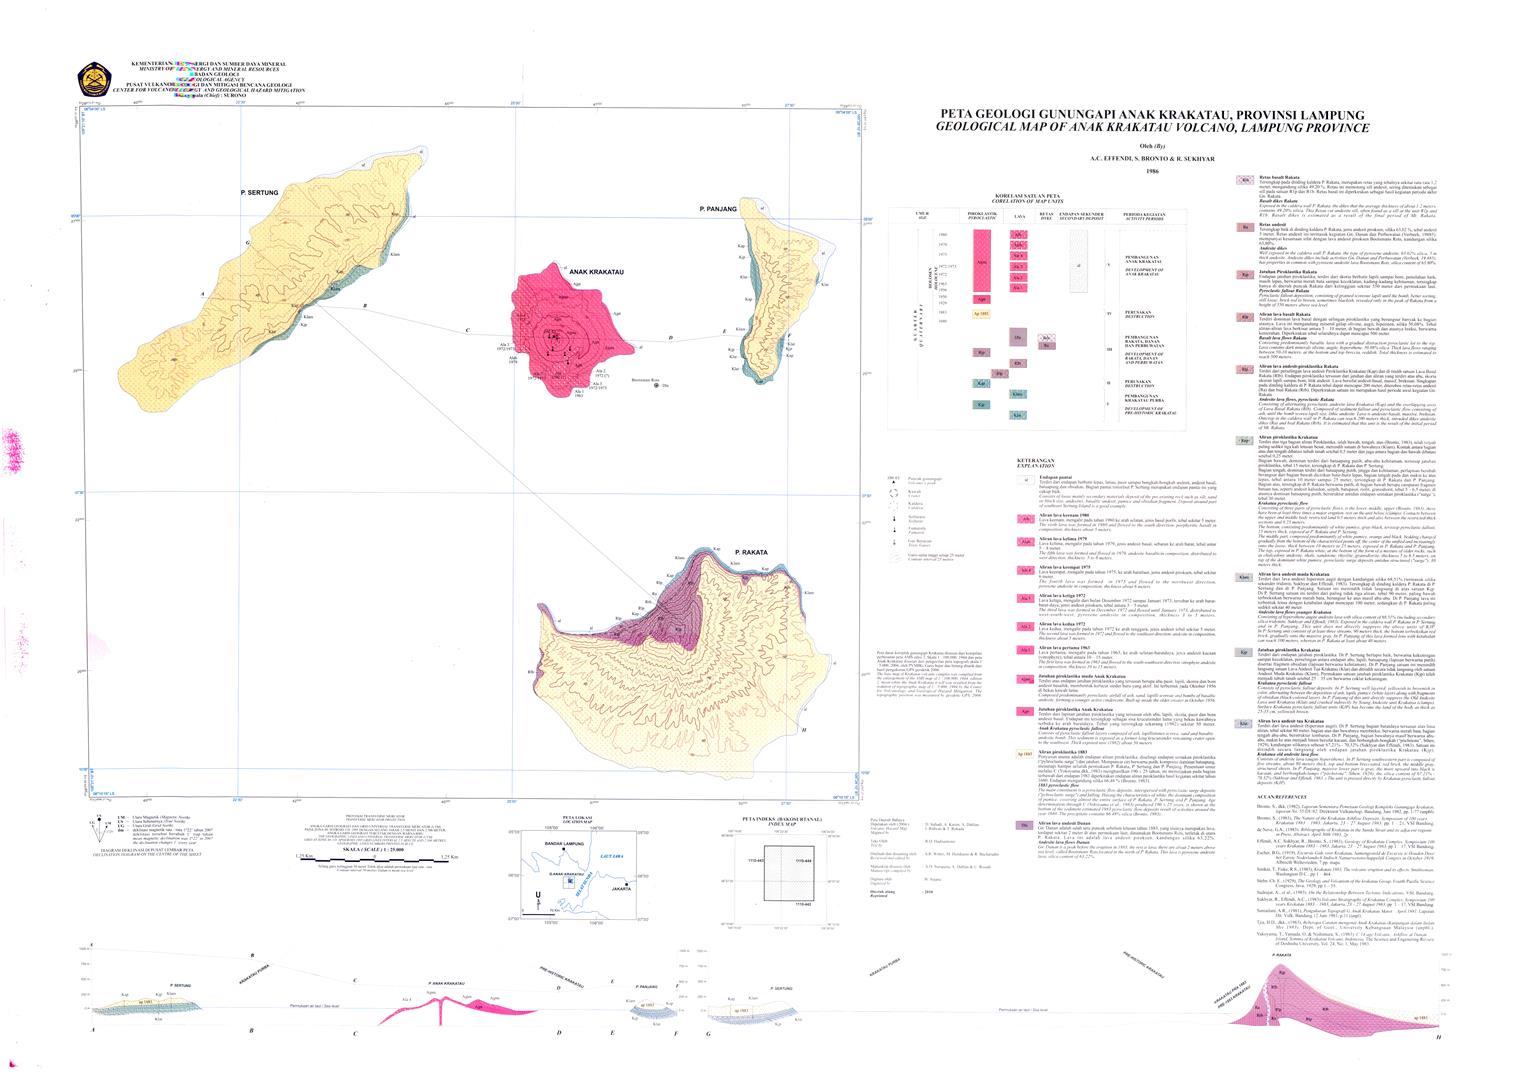 Dapatkan Peta Digital Geologi Gunung Api seluruh Indonesia Gratis